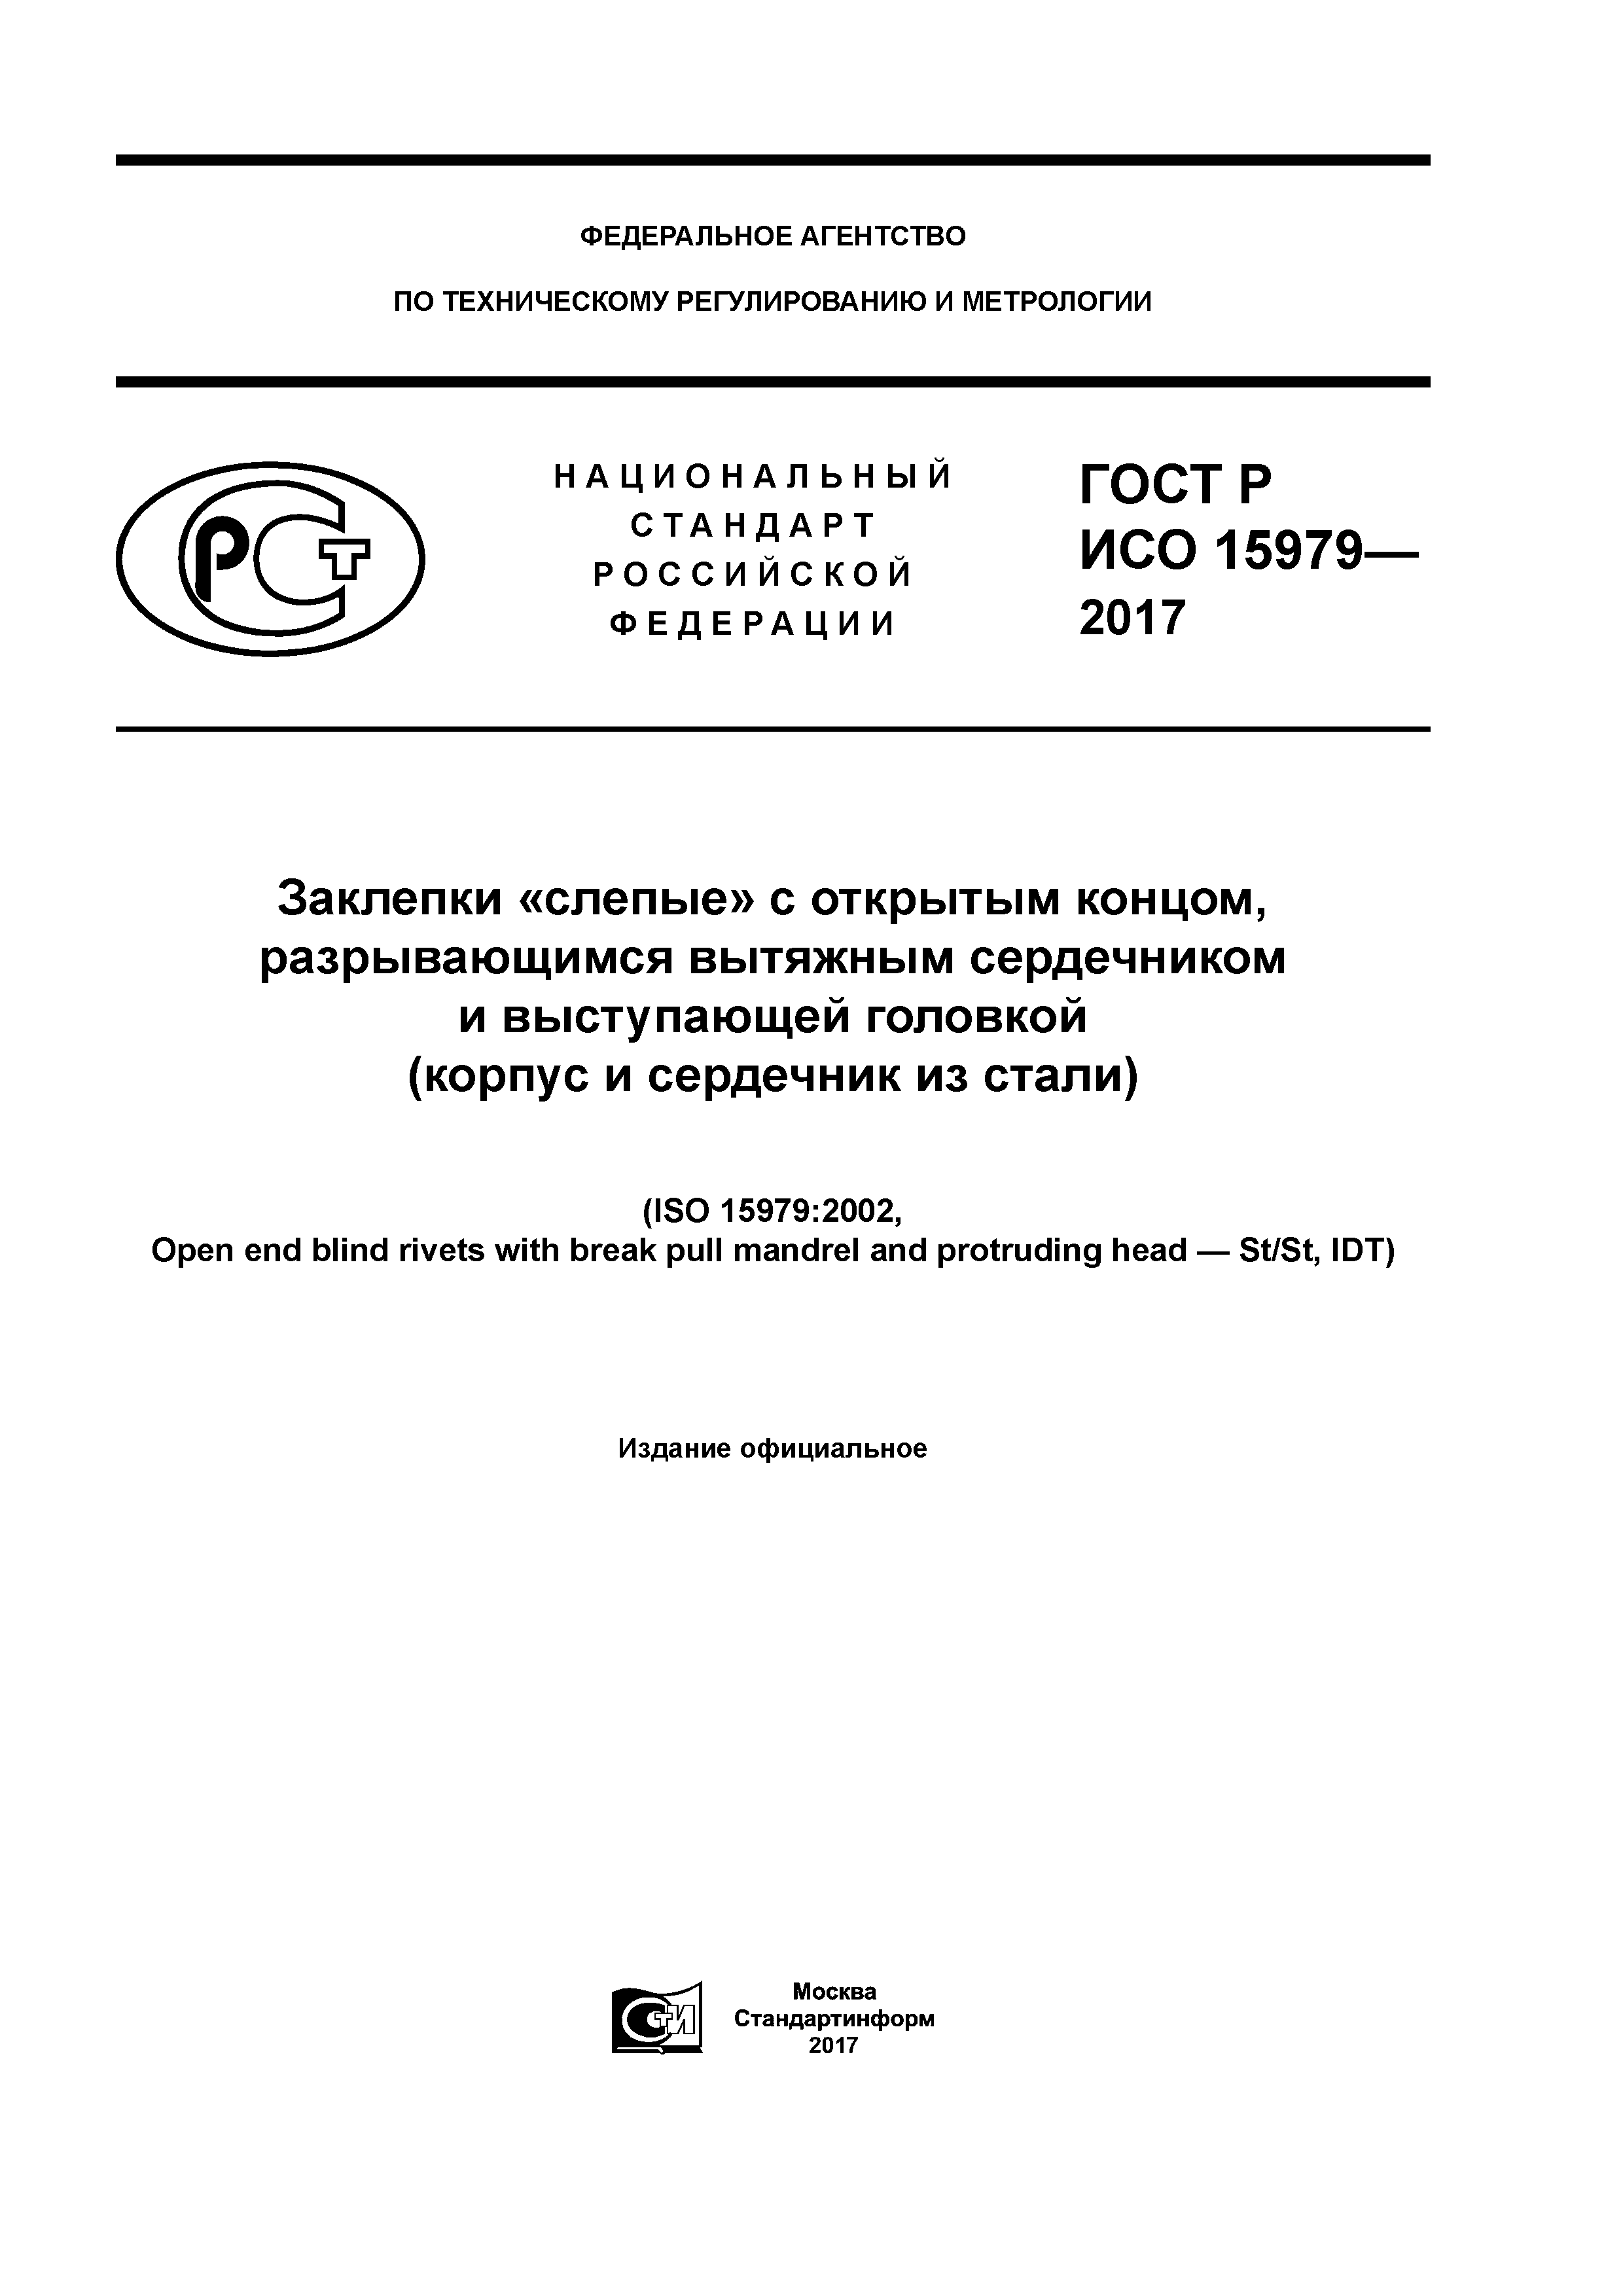 ГОСТ Р ИСО 15979-2017